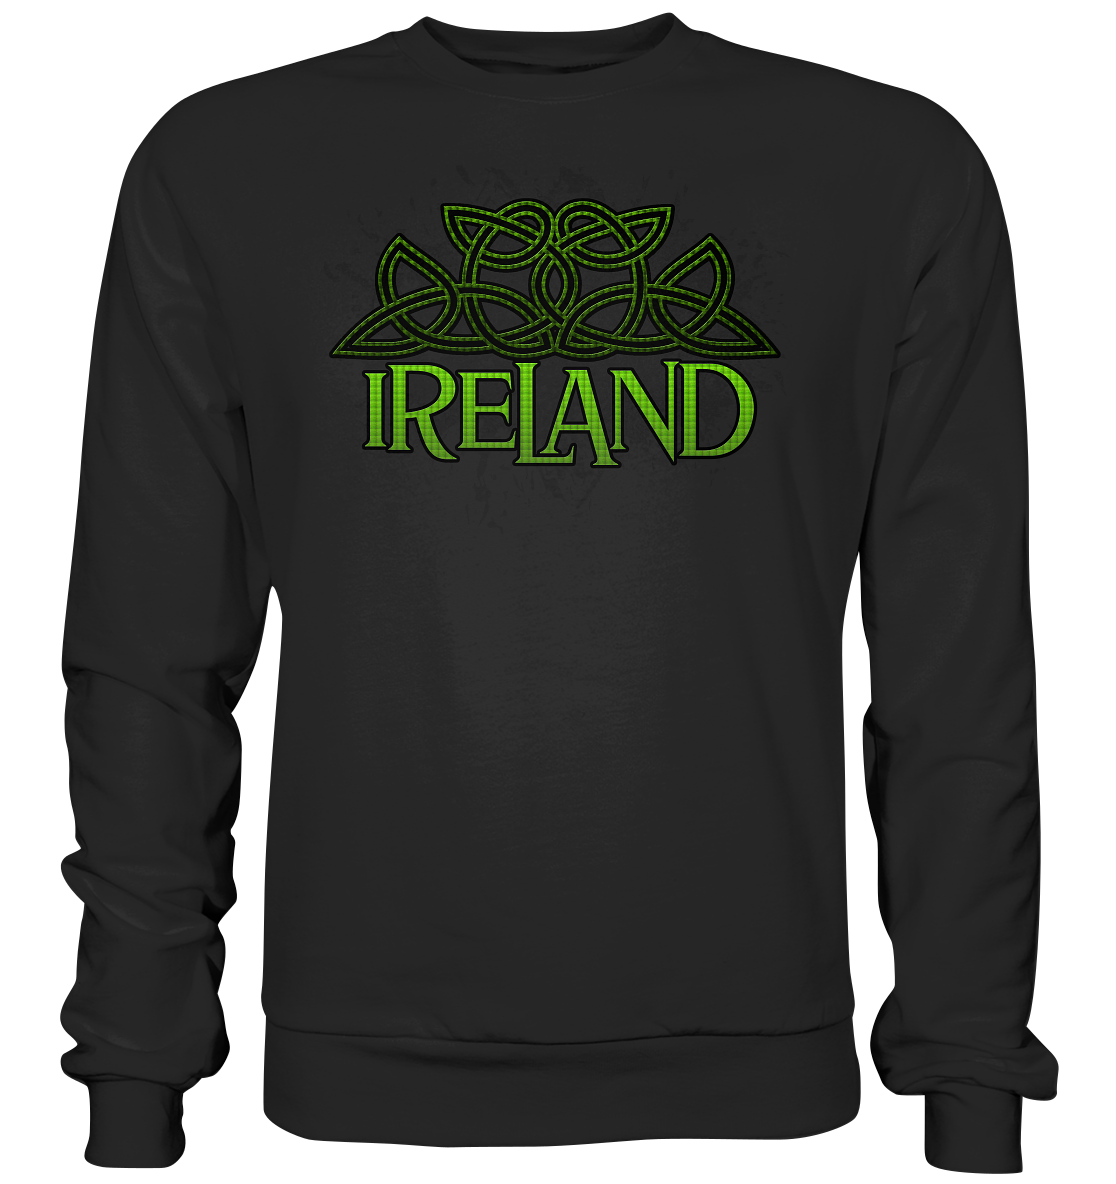 Ireland "Celtic Knot" - Basic Sweatshirt